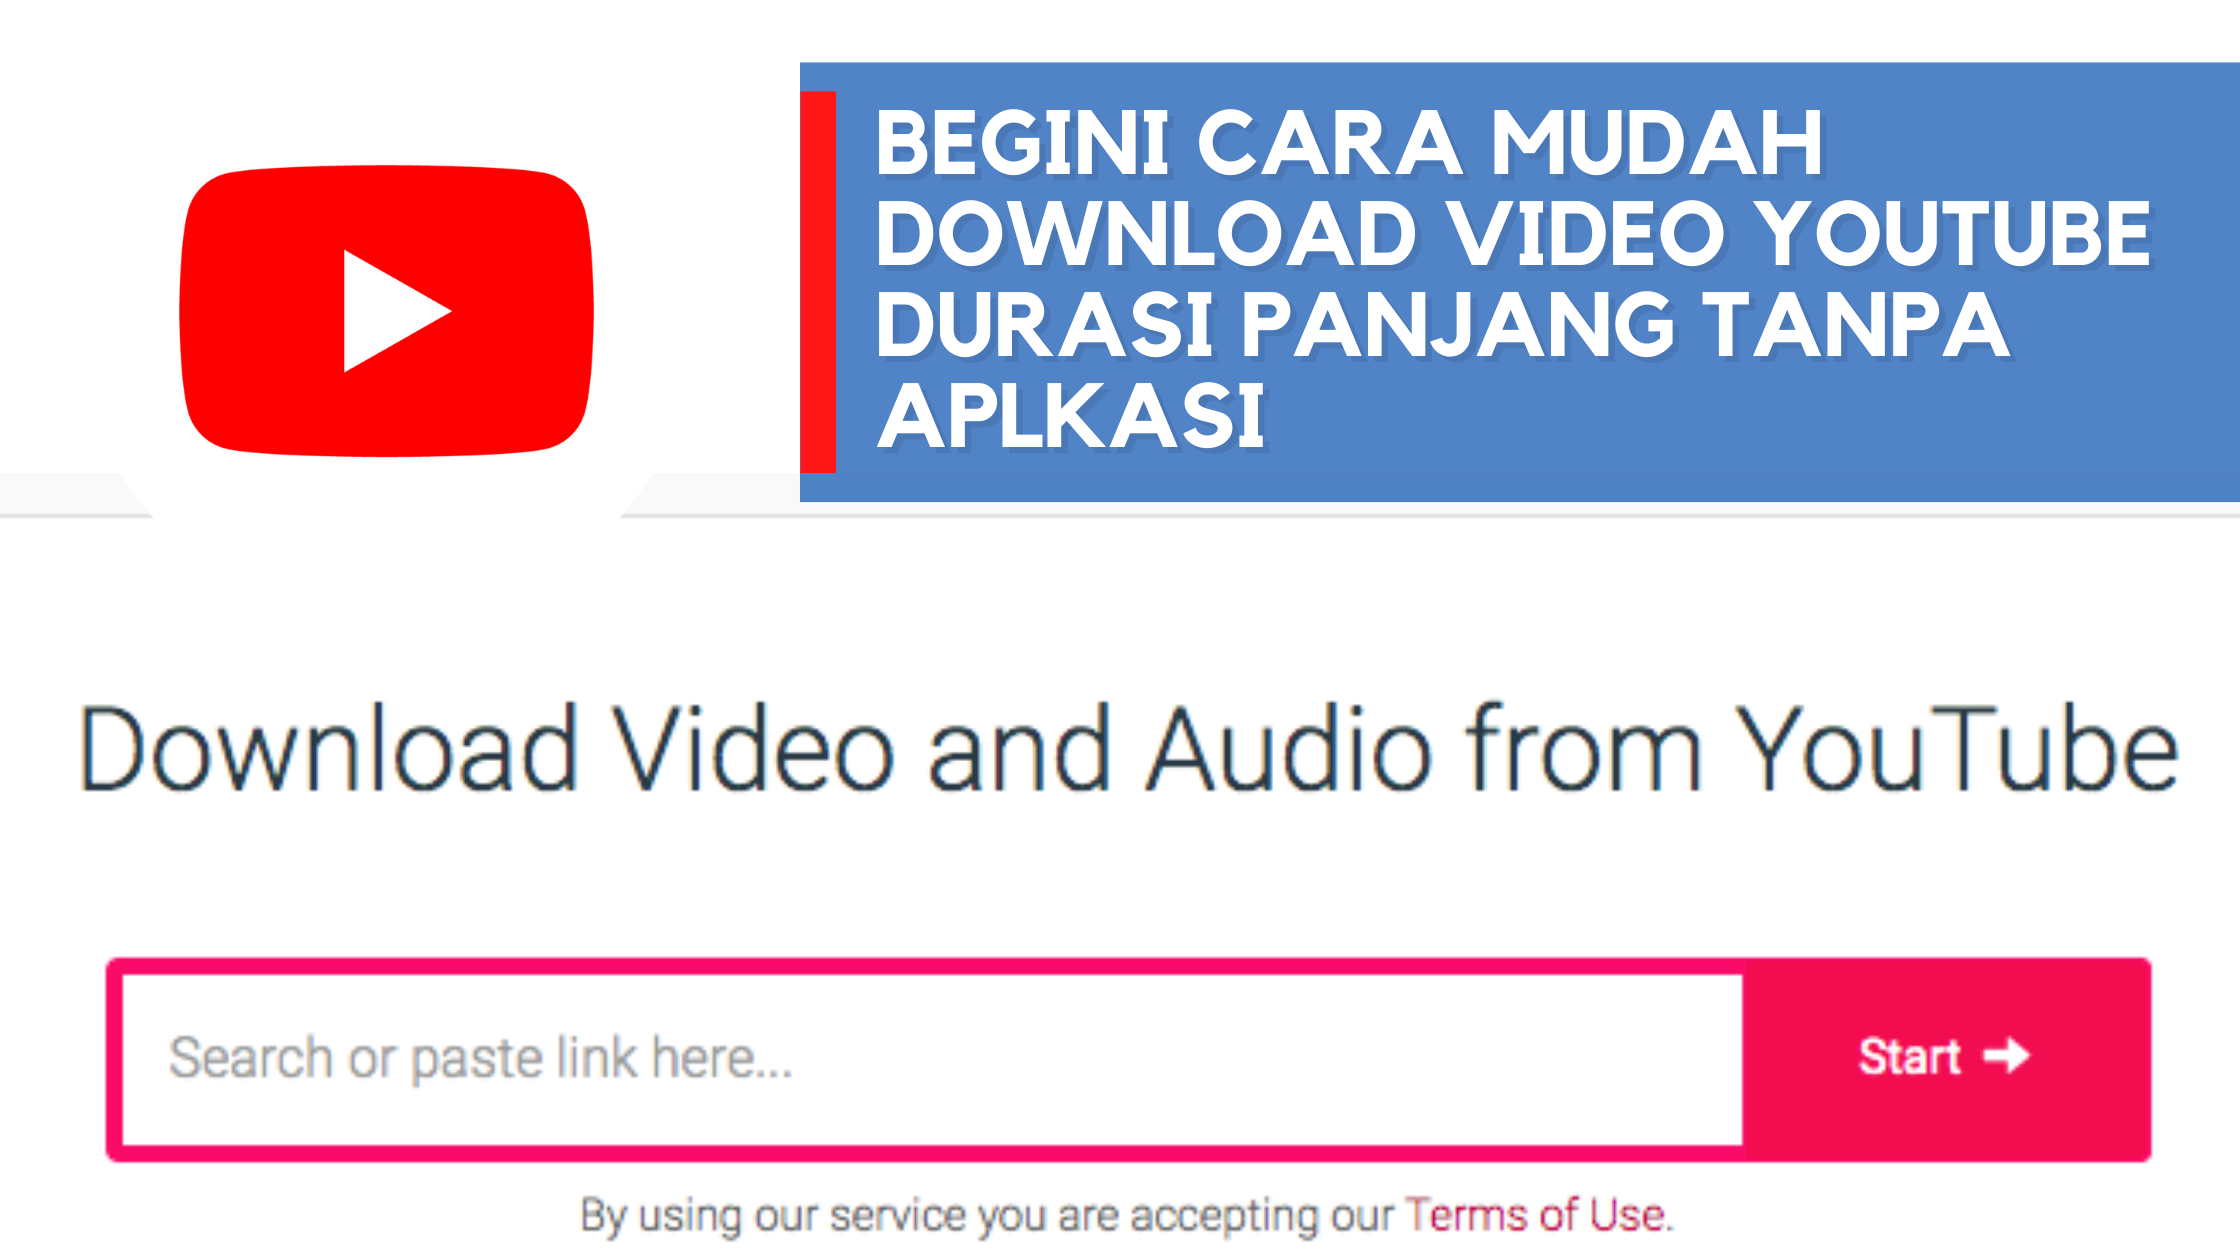 Begini Cara Mudah Download Video youtube Durasi Panjang Tanpa Aplkasi